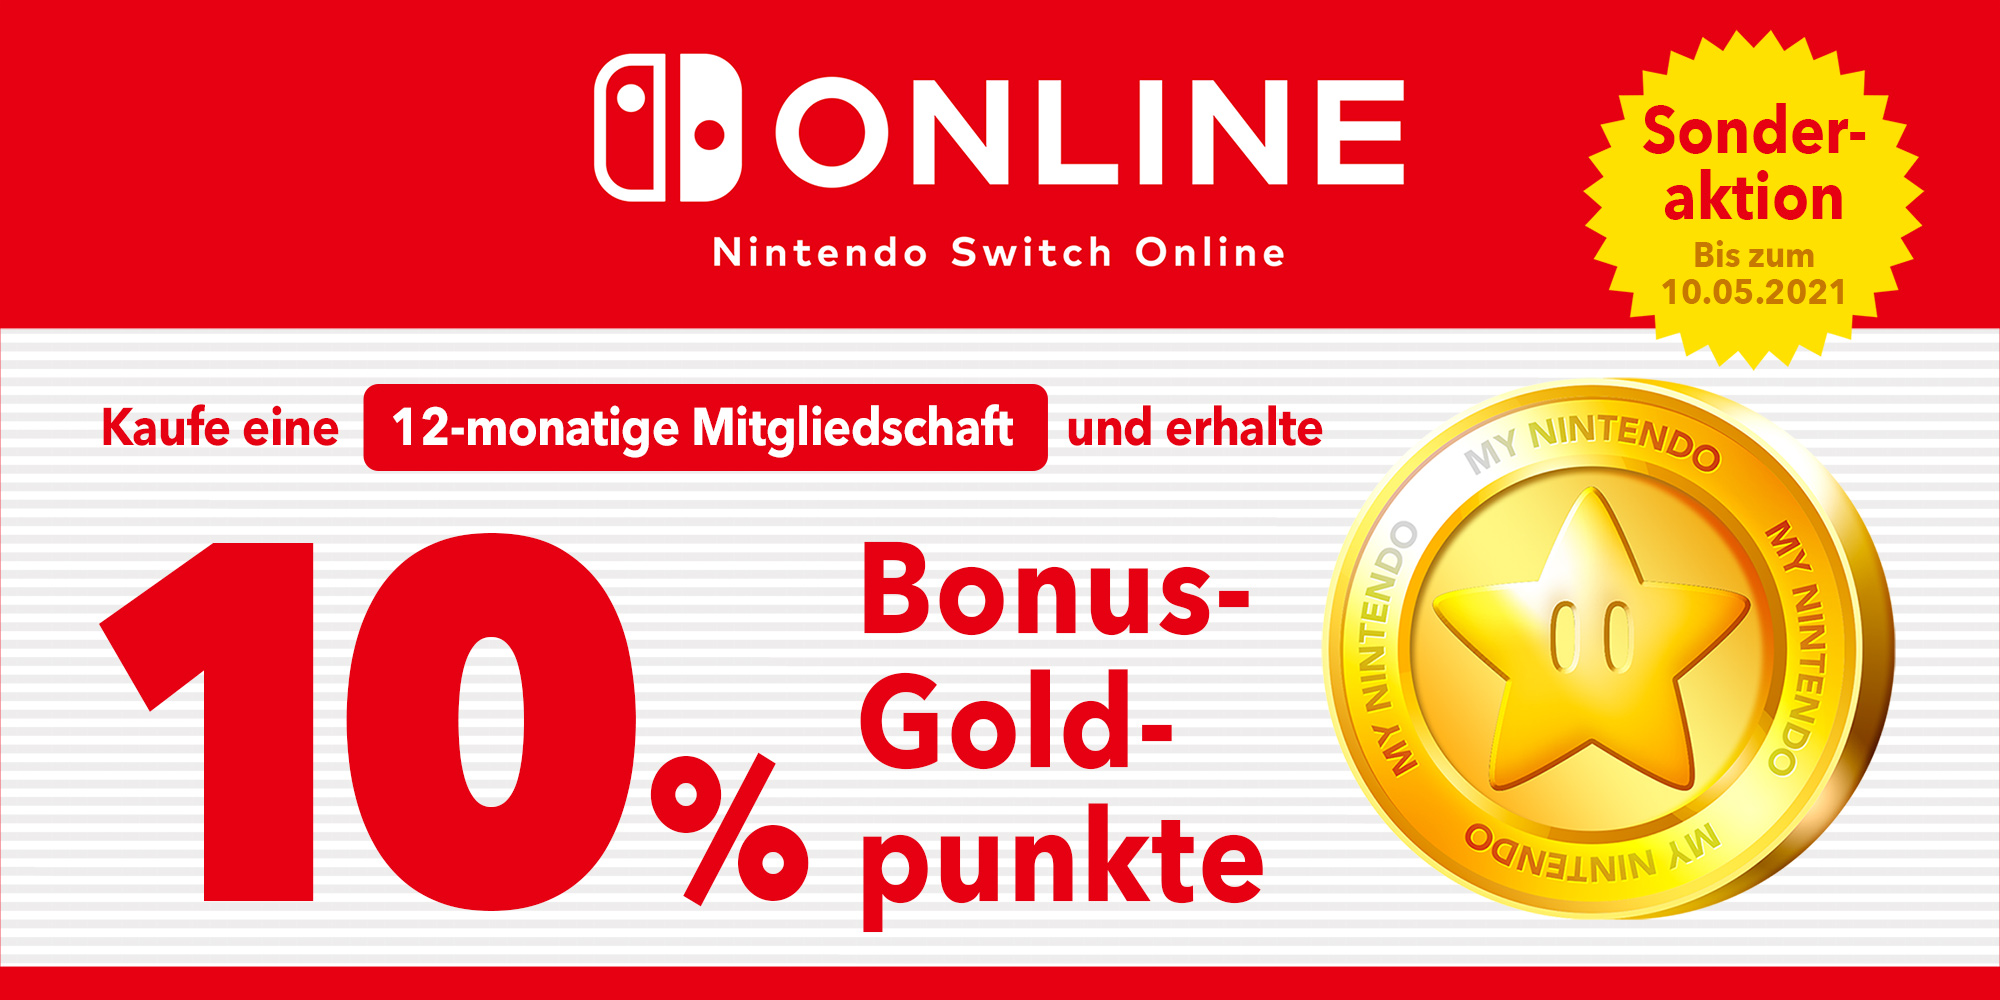 Sonderaktion: Verdiene bis zu 3,50 € in Goldpunkten mit einer 12-monatigen Mitgliedschaft bei Nintendo Switch Online!